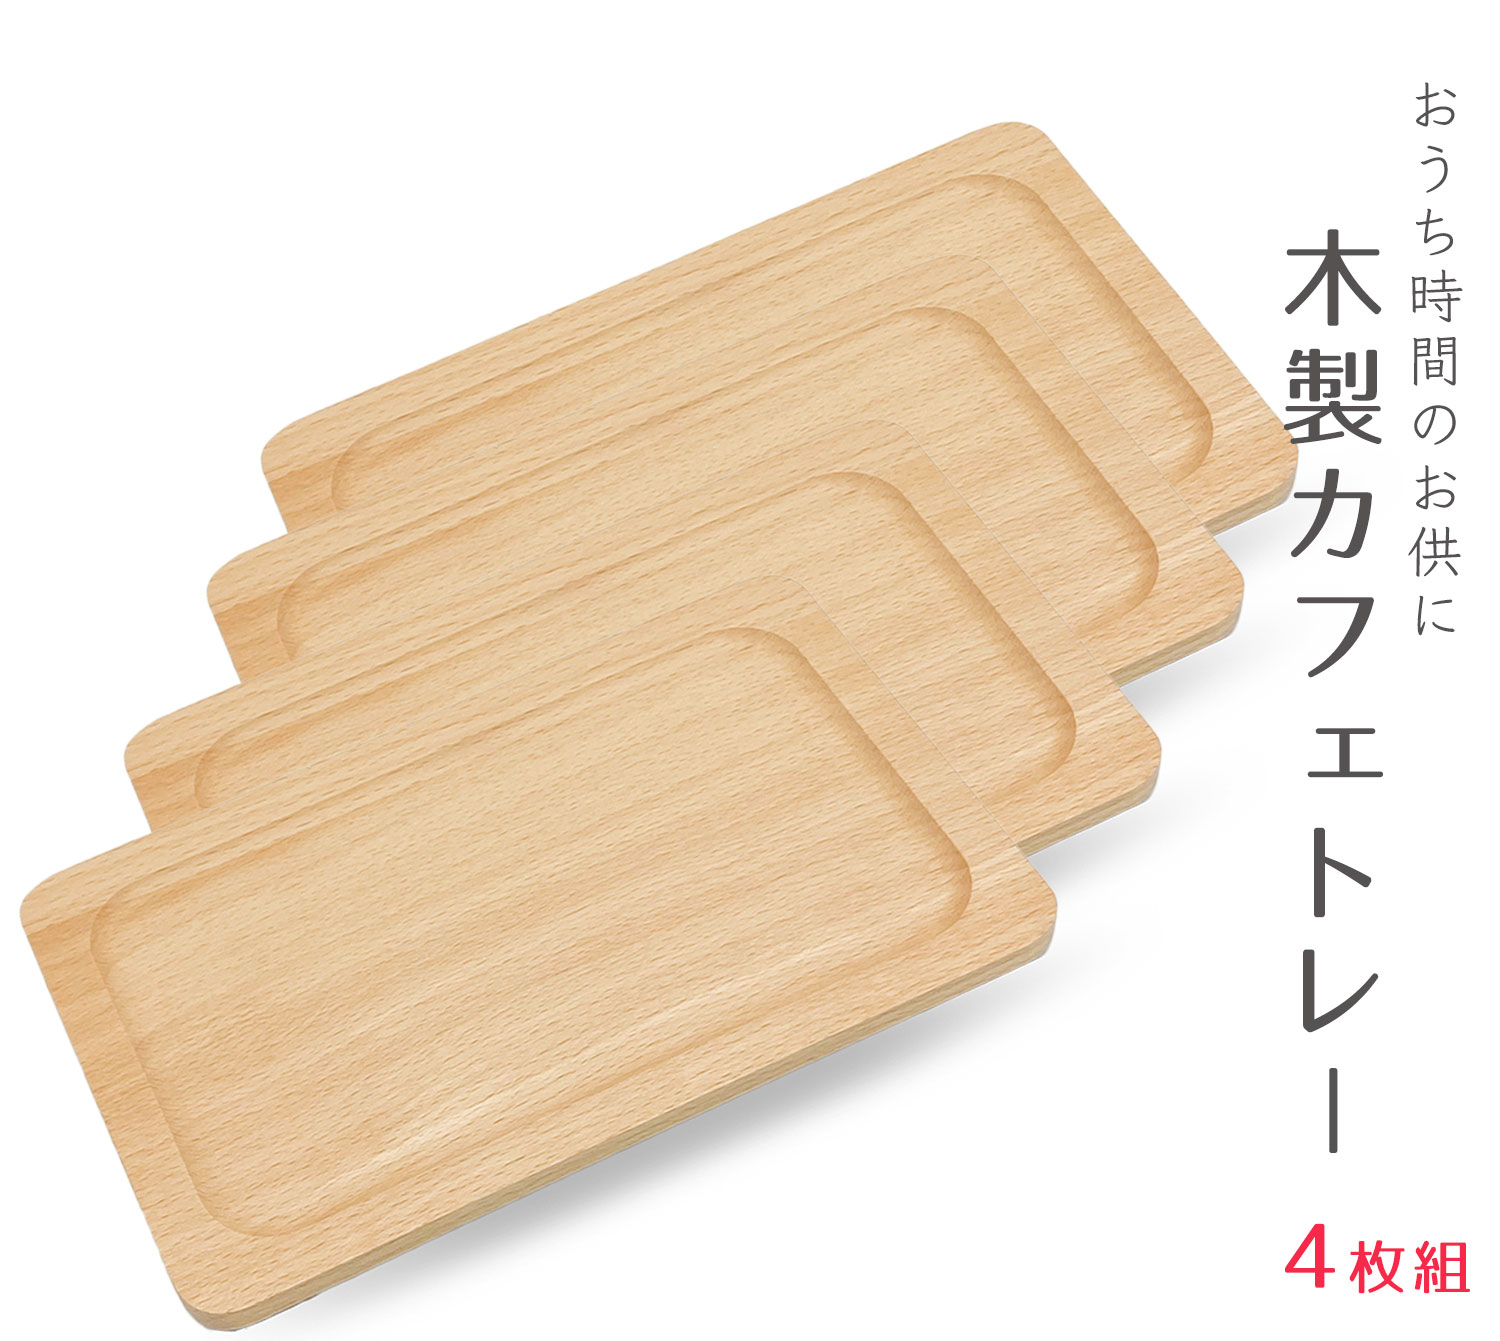 【再入荷】木製トレー 4枚 カフェト